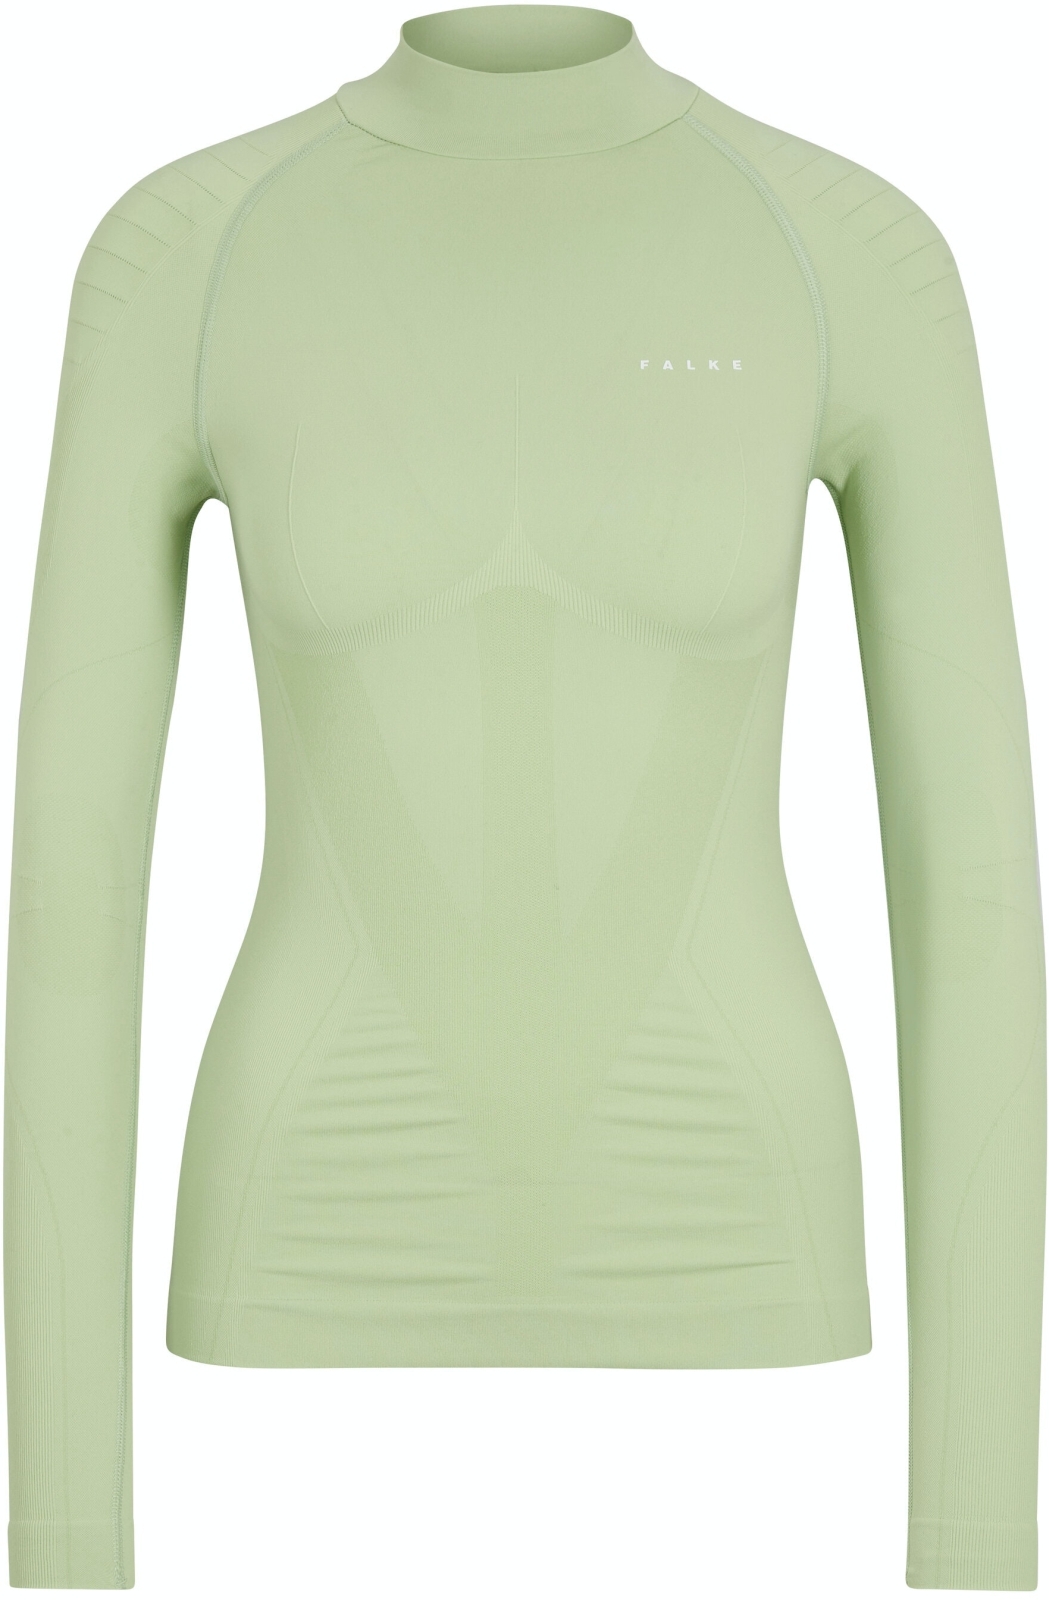 E-shop Falke Women long sleeve Shirt Warm - quiet green S